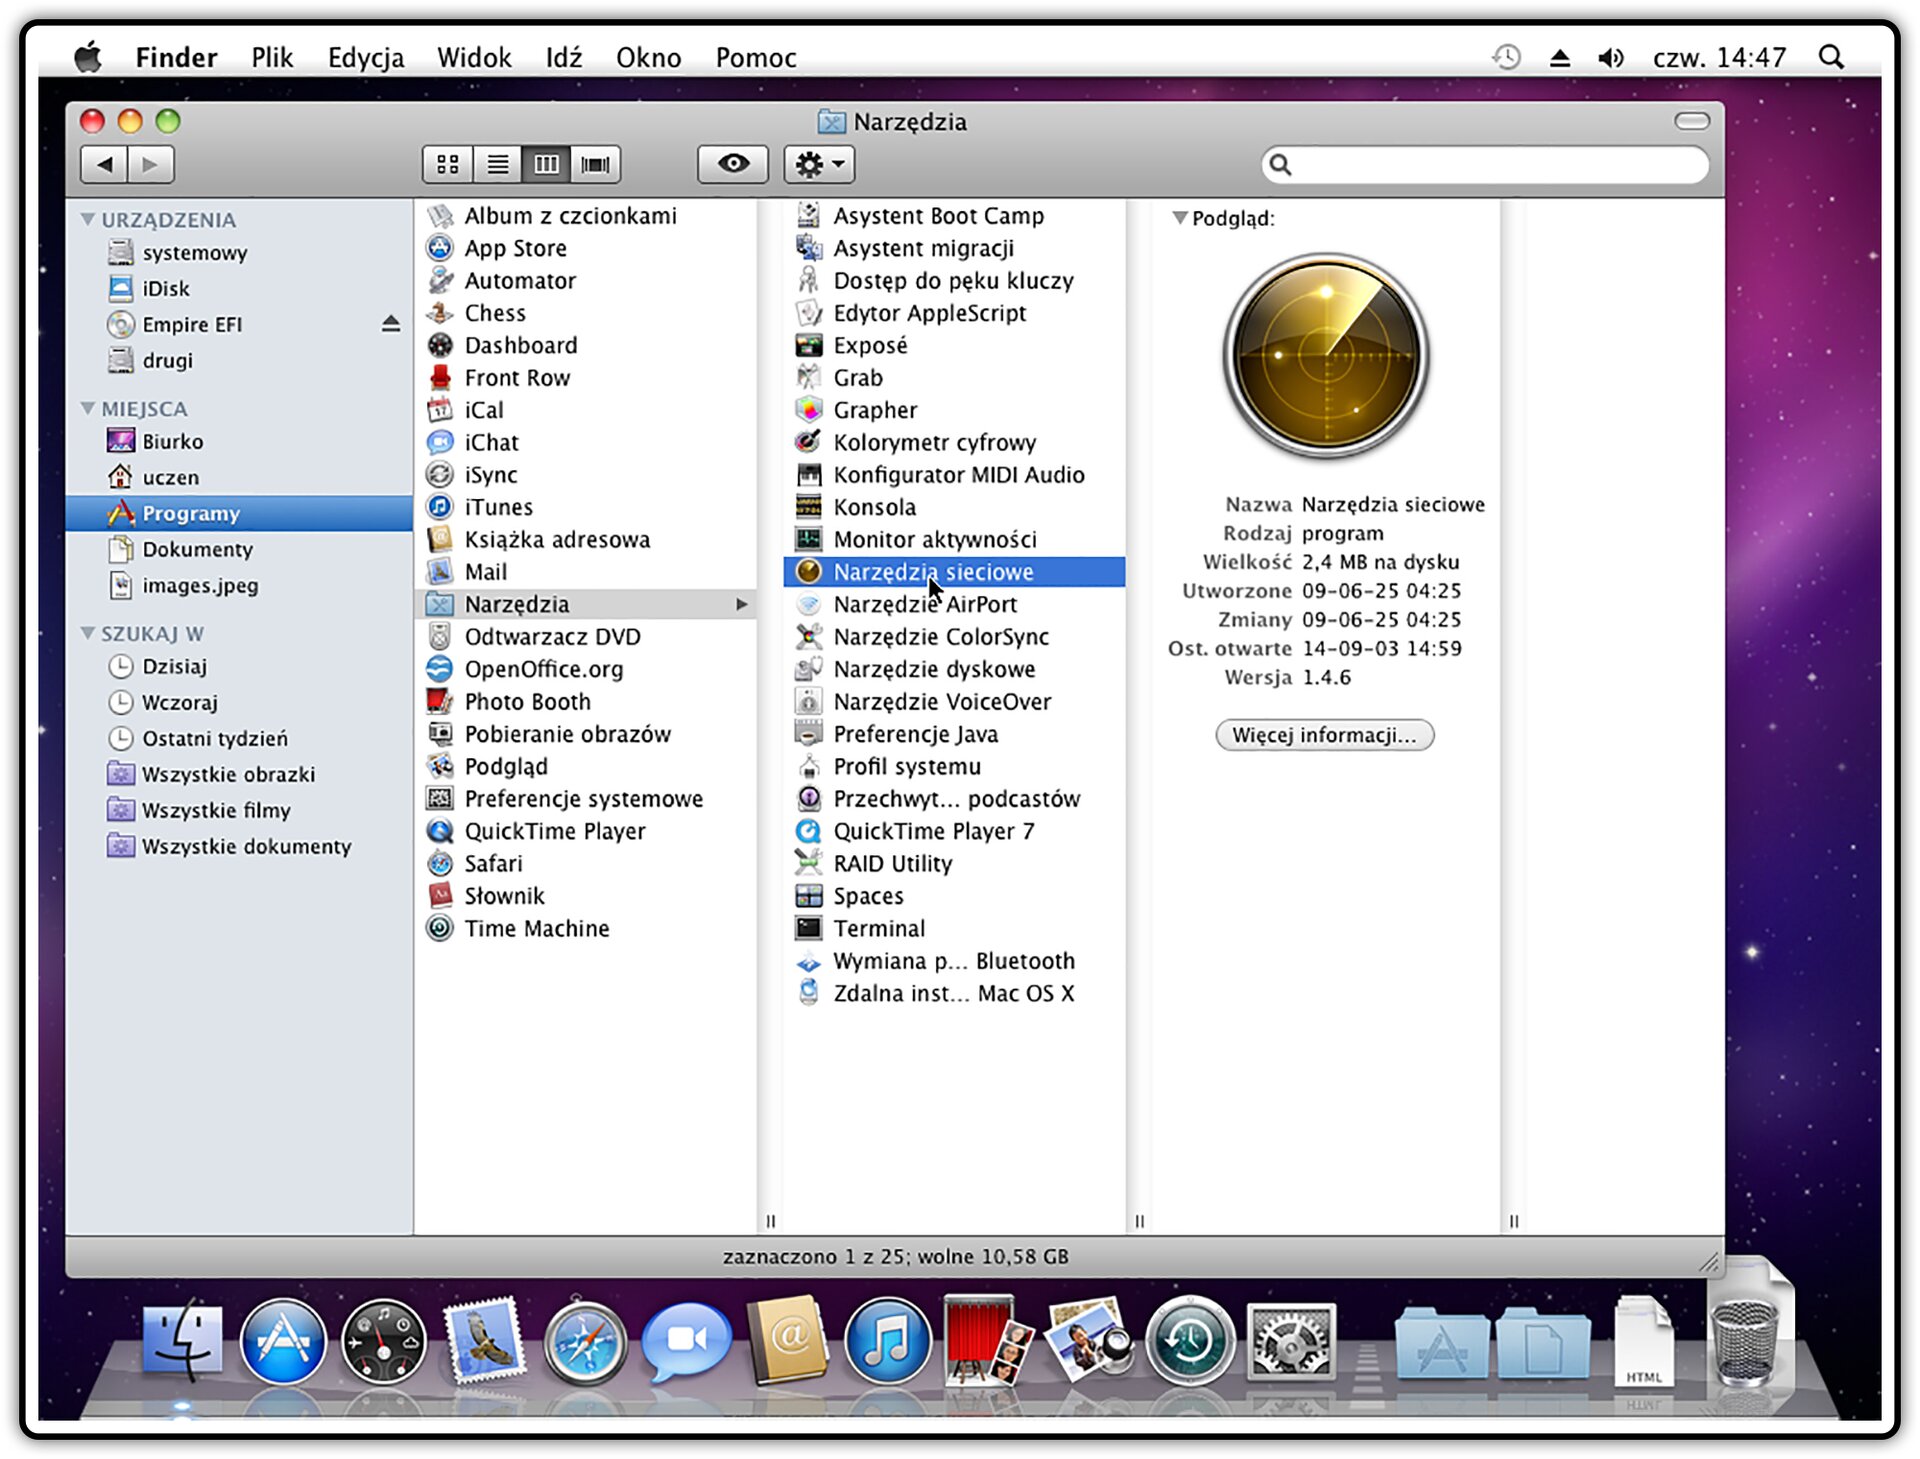 Zrzut okna programu Finder z podglądem narzędzi siecowych w systemie operacyjnym Mac OS X